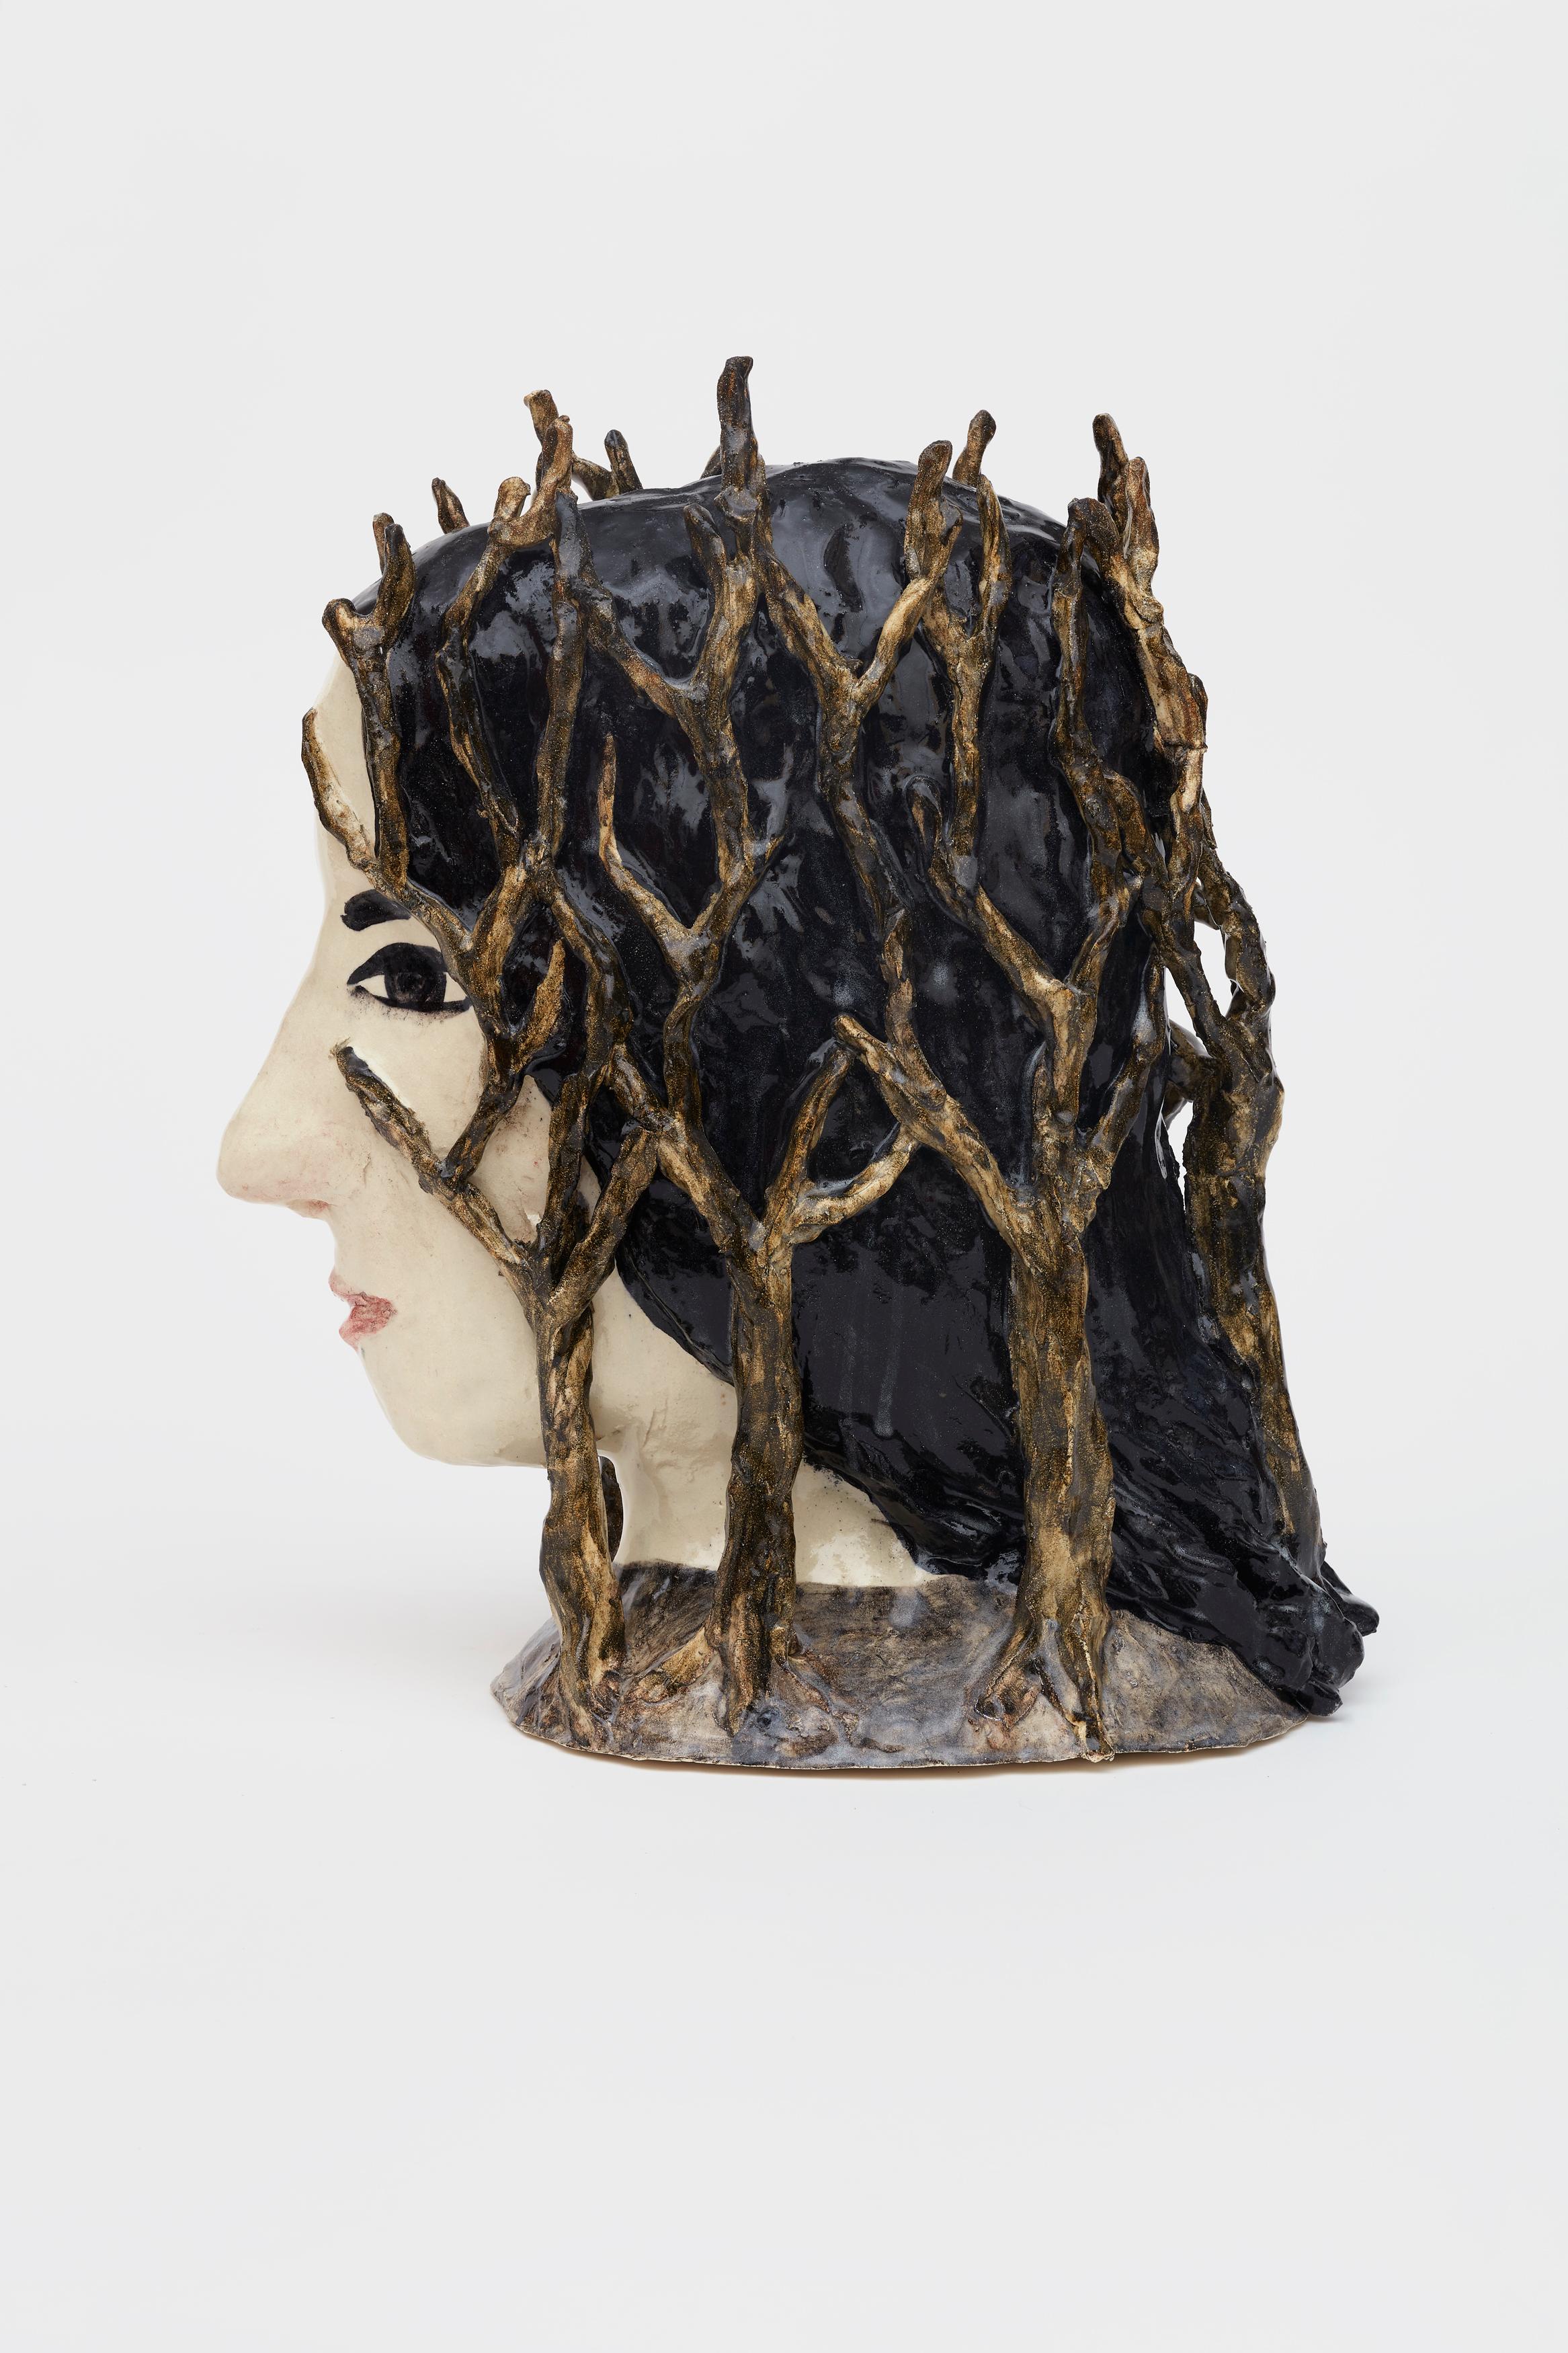 Klara Kristalova Figurative Sculpture – Taktiert von Bäumen